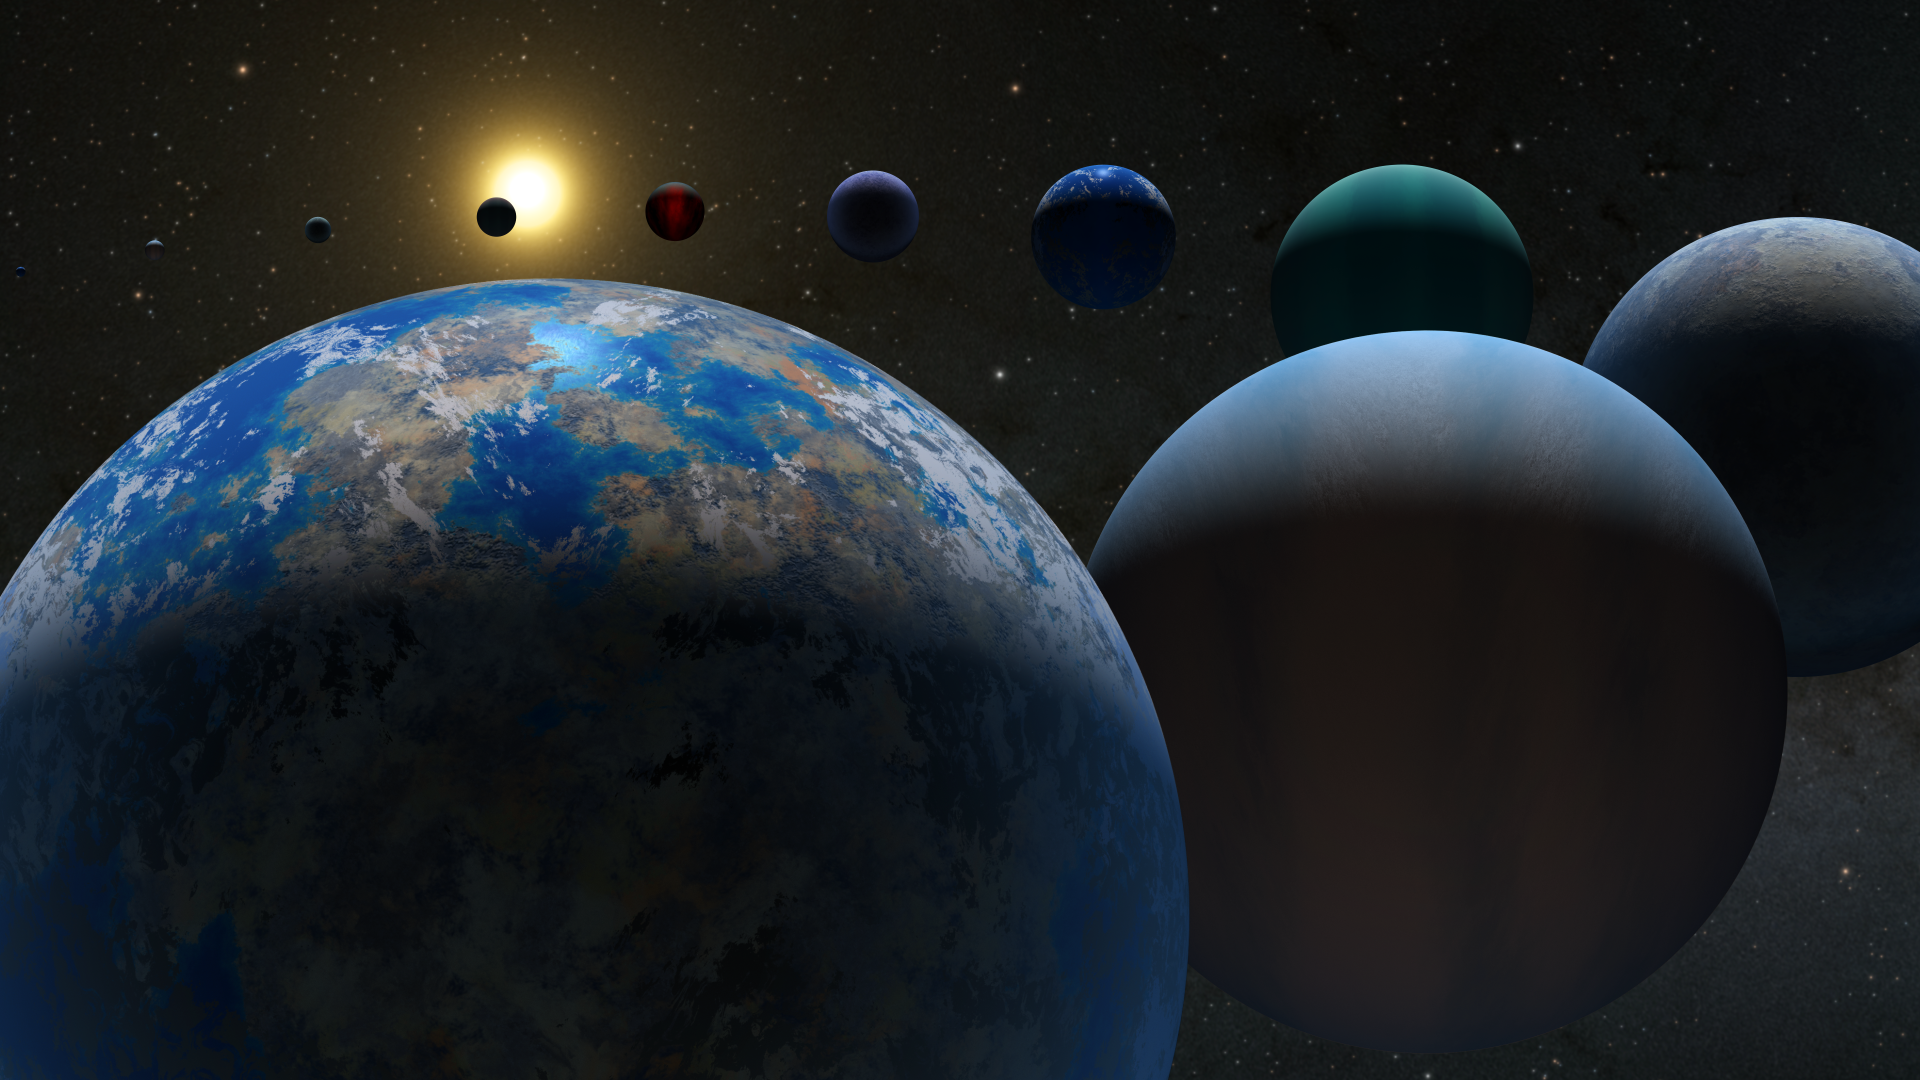 Artist illustration of exoplanets